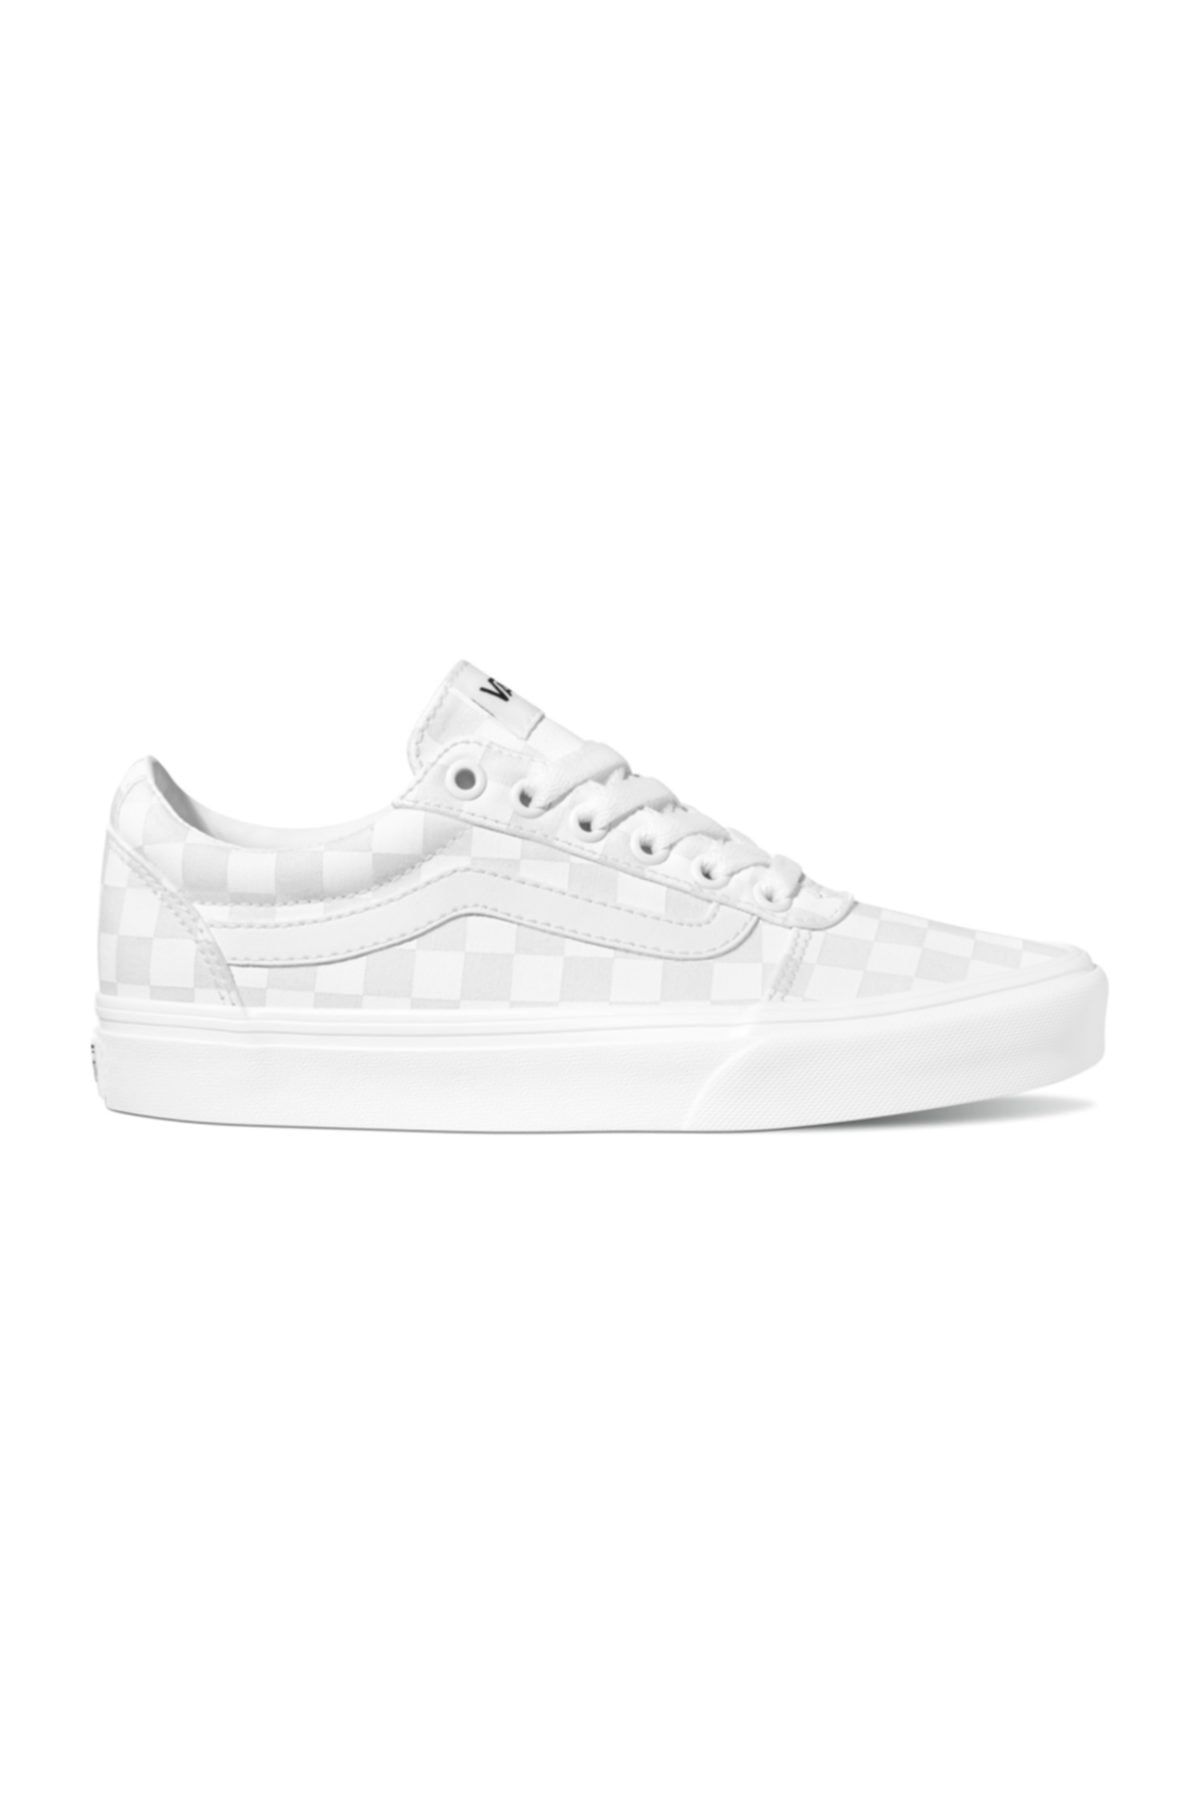 Vans WM WARD Beyaz Kadın Sneaker Ayakkabı 100575324